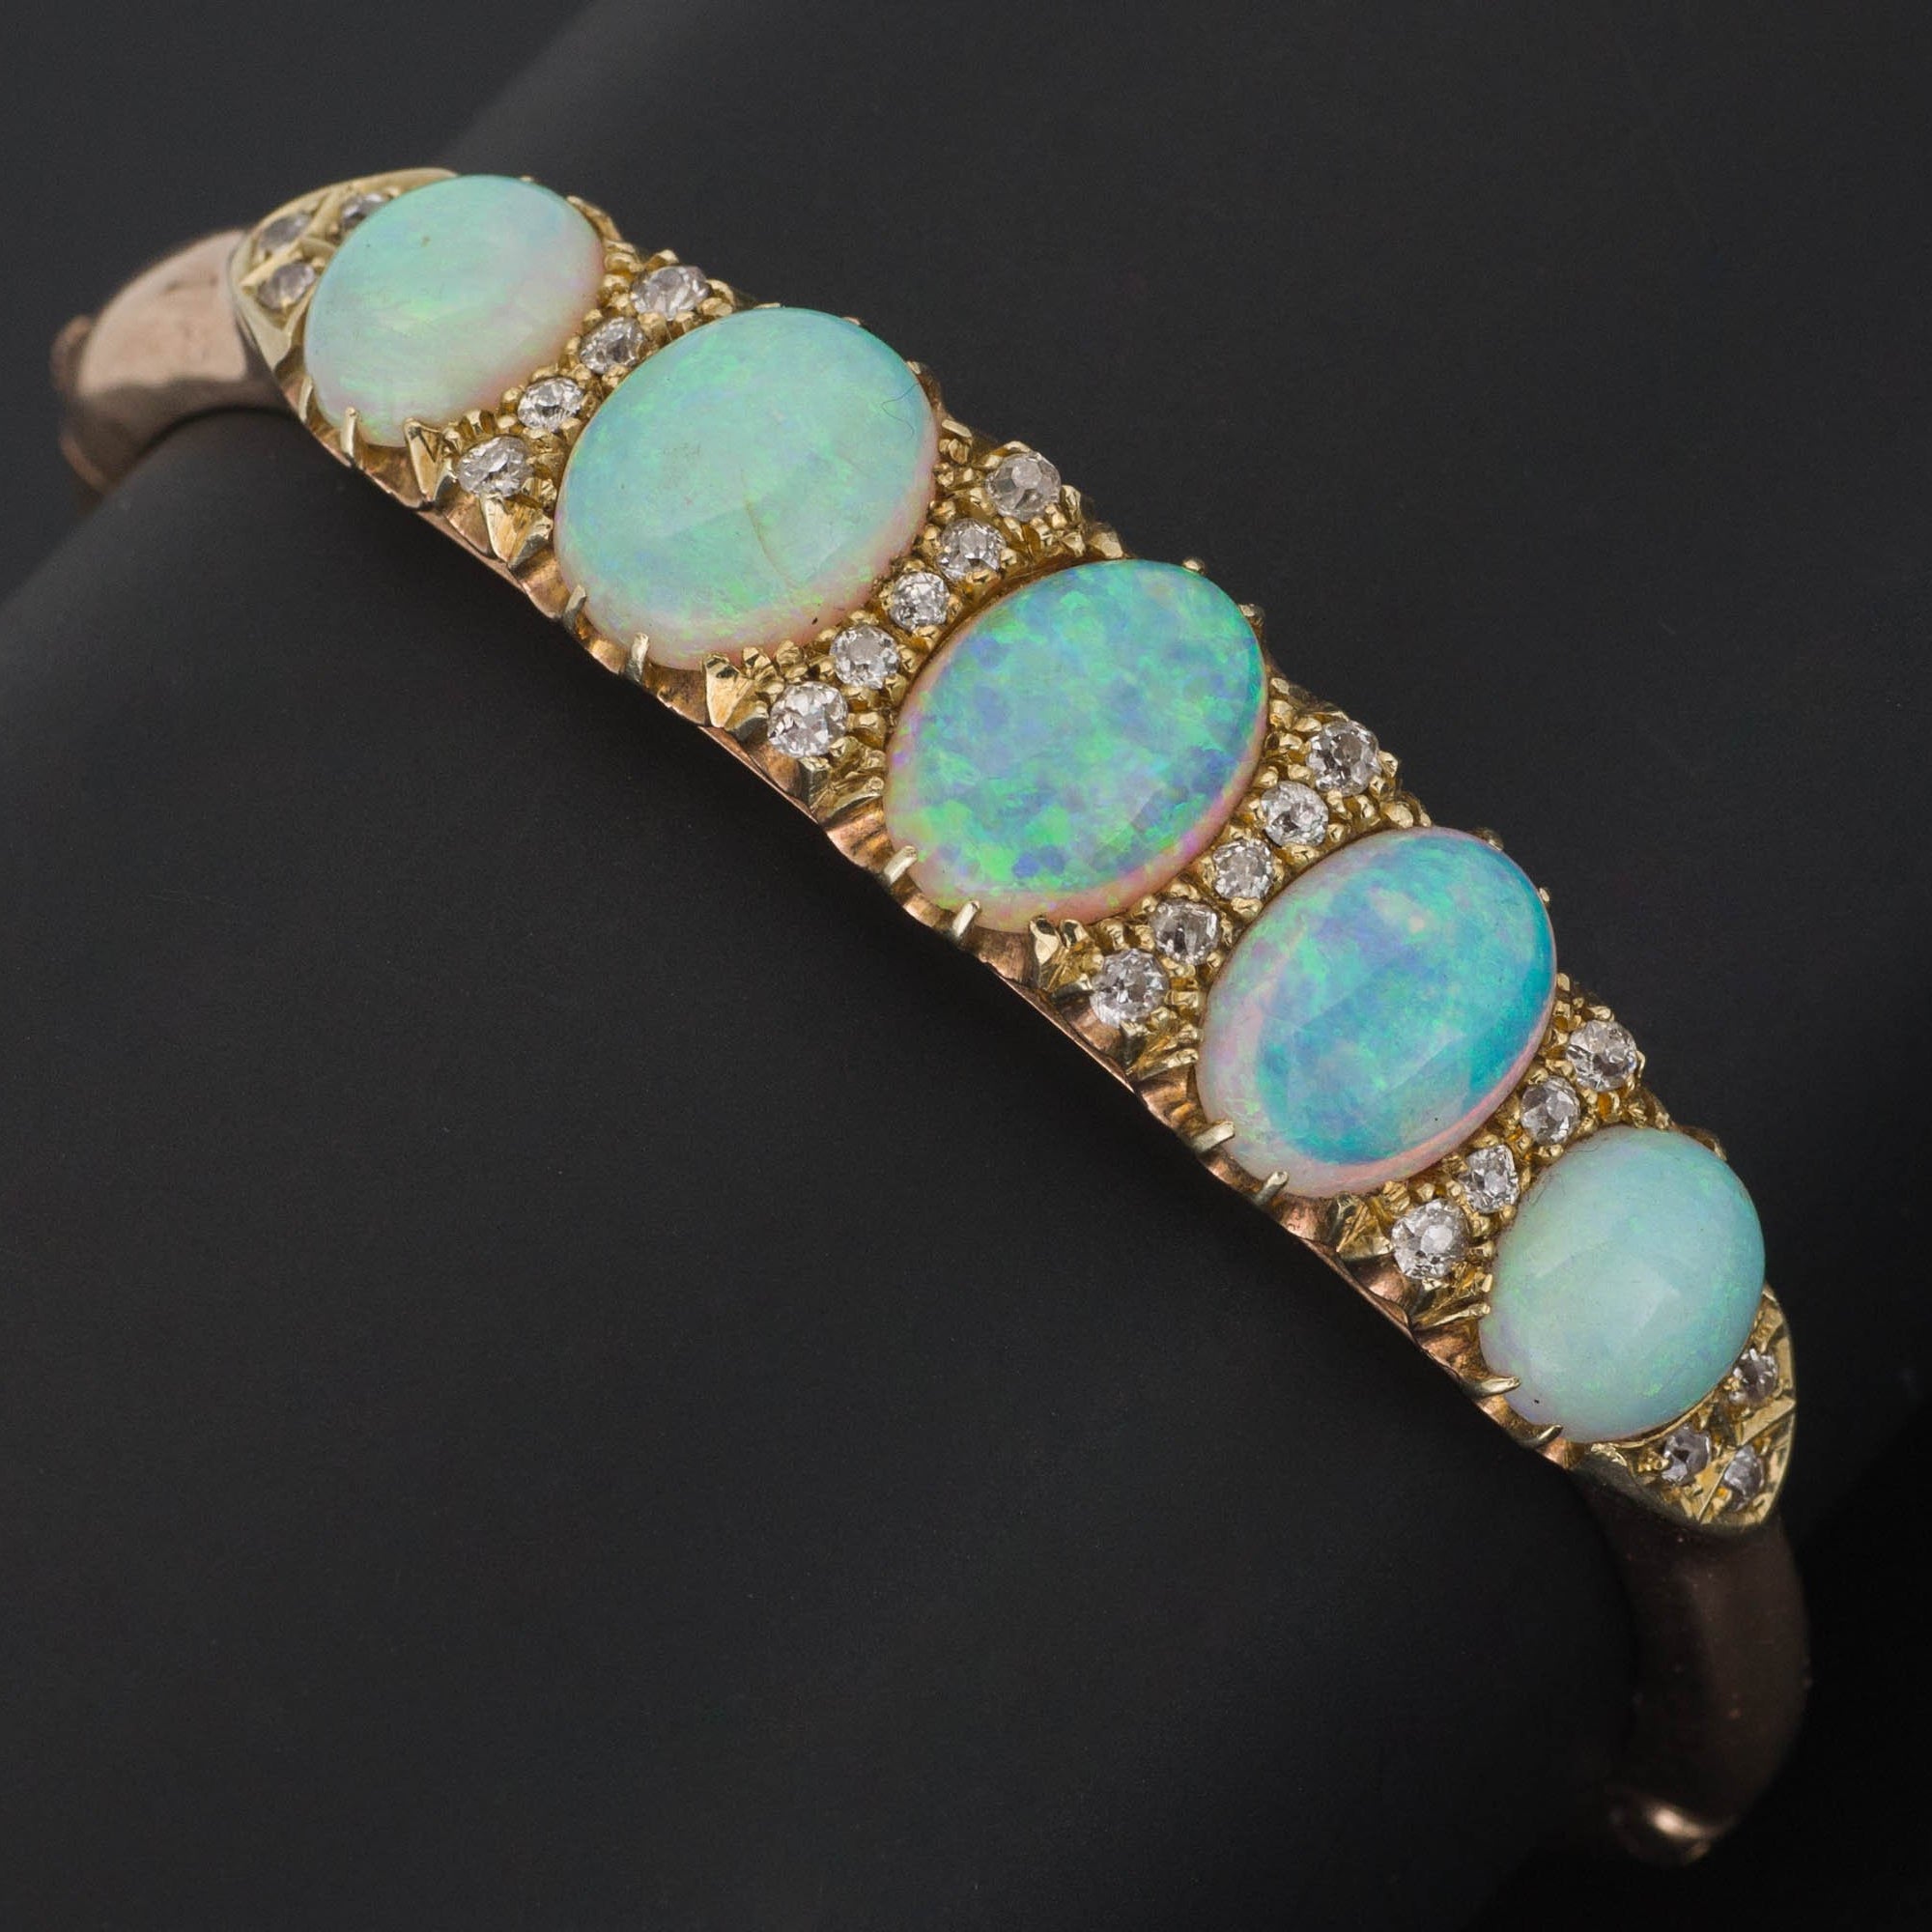 Opal & Diamond Bracelet | Opal Bangle Bracelet | Antique Opal Bracelet | 14k Gold Bangle Bracelet